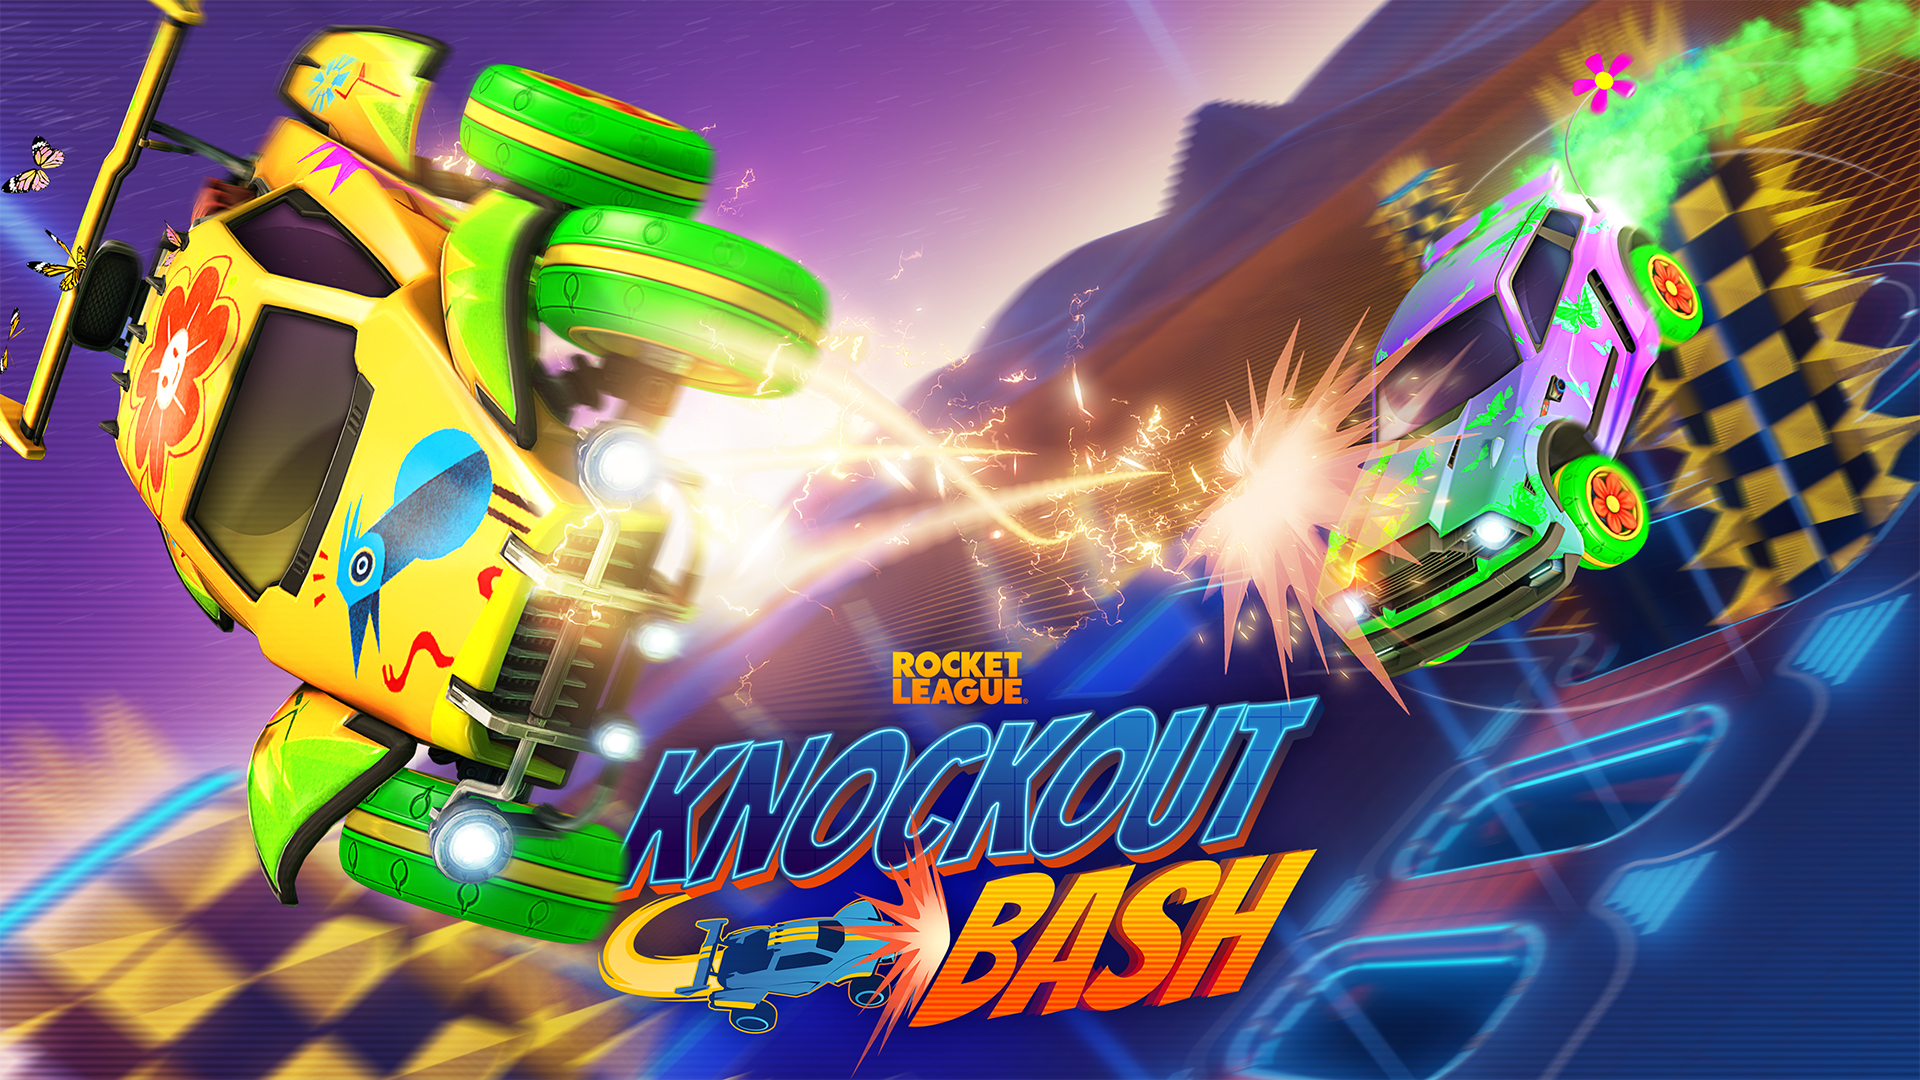 Video For Knockout Bash: Rocket League’s Smash-Hit Event